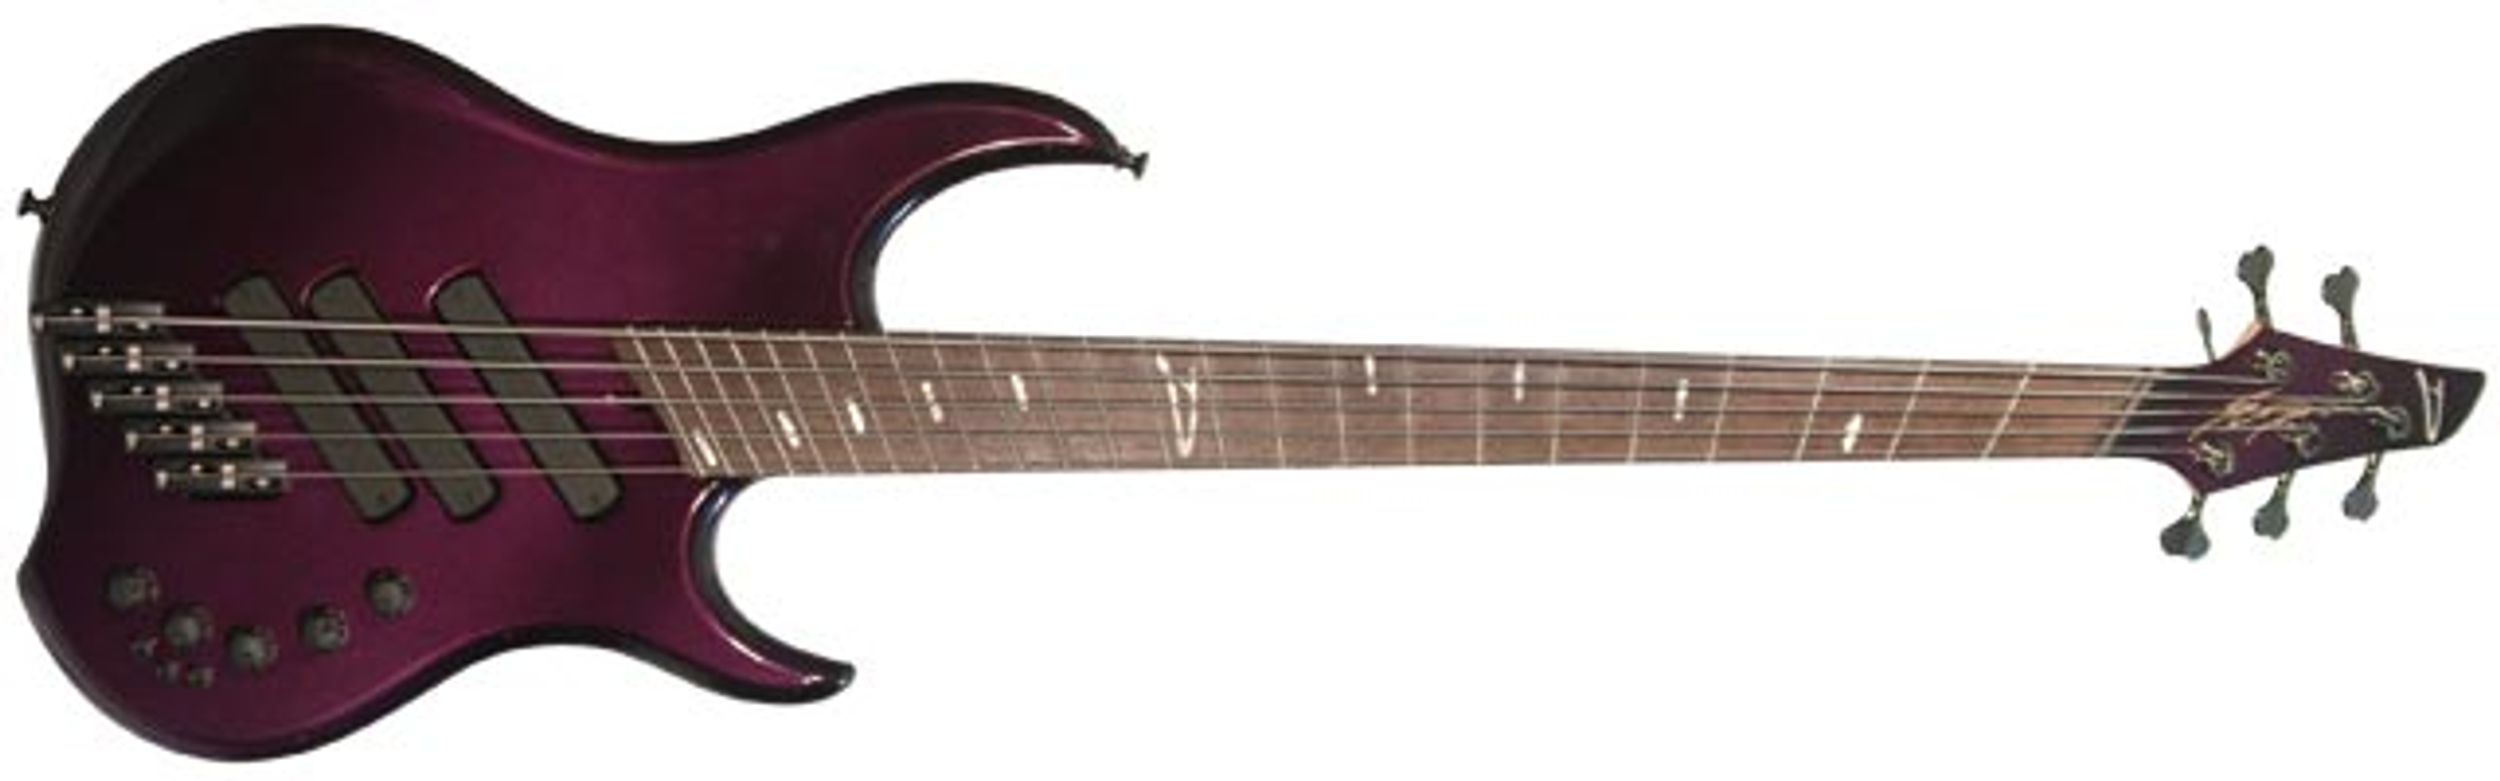 Dingwall Guitars Z3 5-String Bass Review